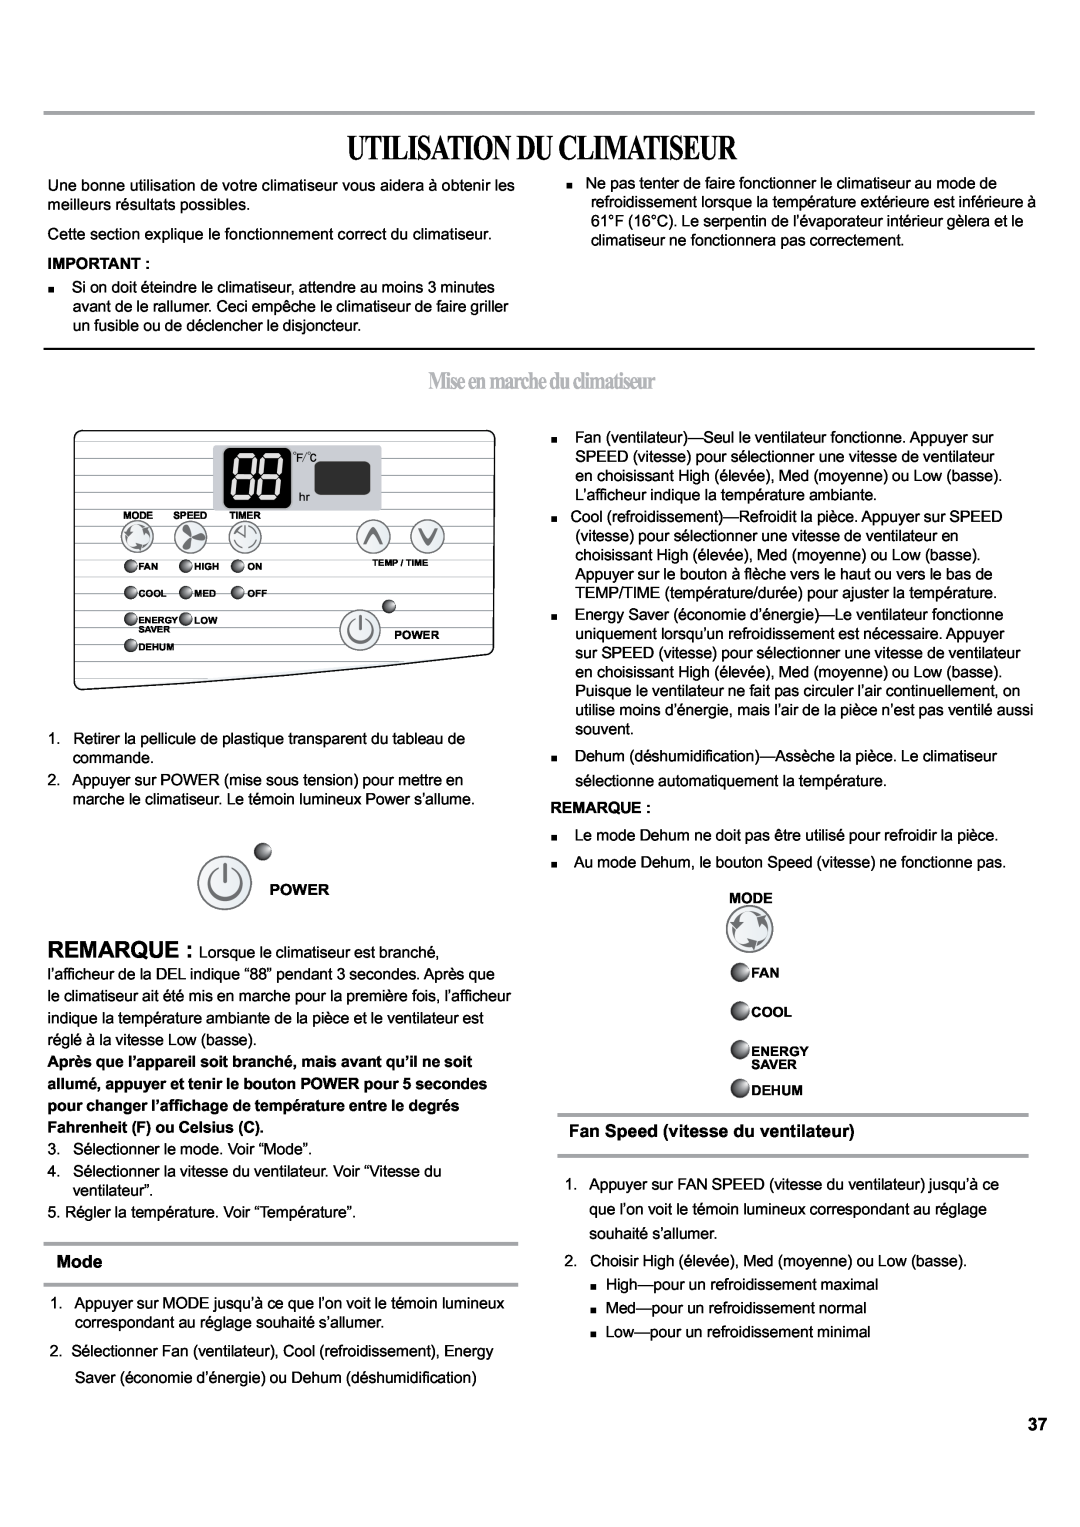 Haier ESA405K manual Utilisationduclimatiseur, Miseenmarcheduclimatiseur, Mode, Fan Speed vitesse du ventilateur 